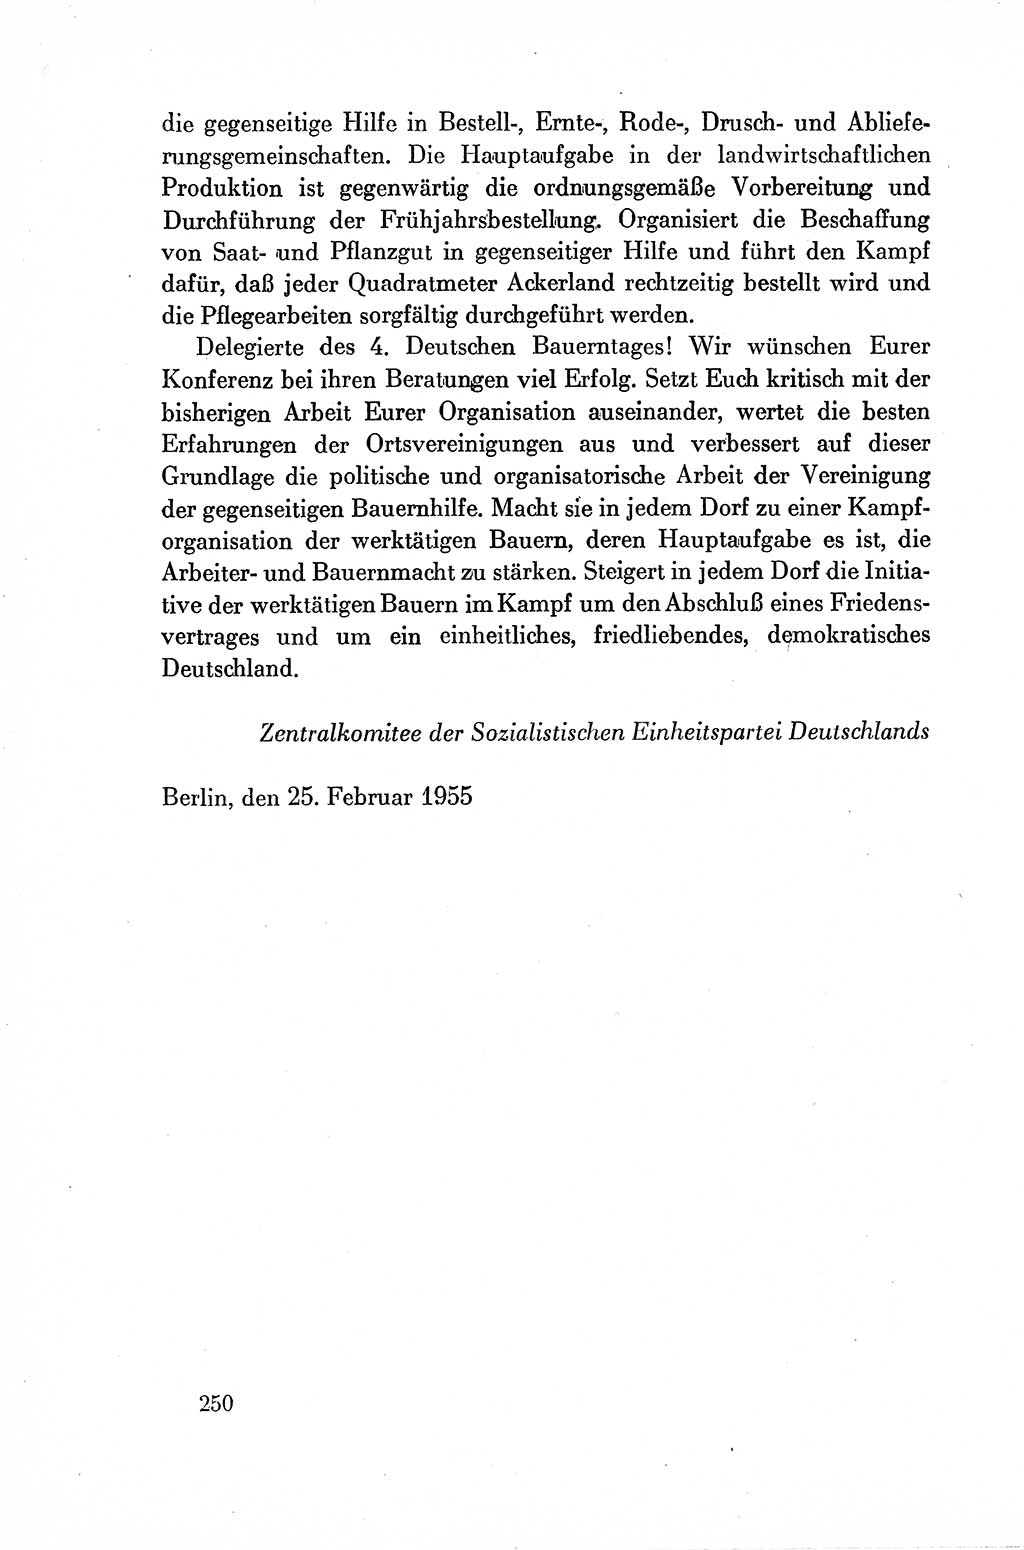 Dokumente der Sozialistischen Einheitspartei Deutschlands (SED) [Deutsche Demokratische Republik (DDR)] 1954-1955, Seite 250 (Dok. SED DDR 1954-1955, S. 250)